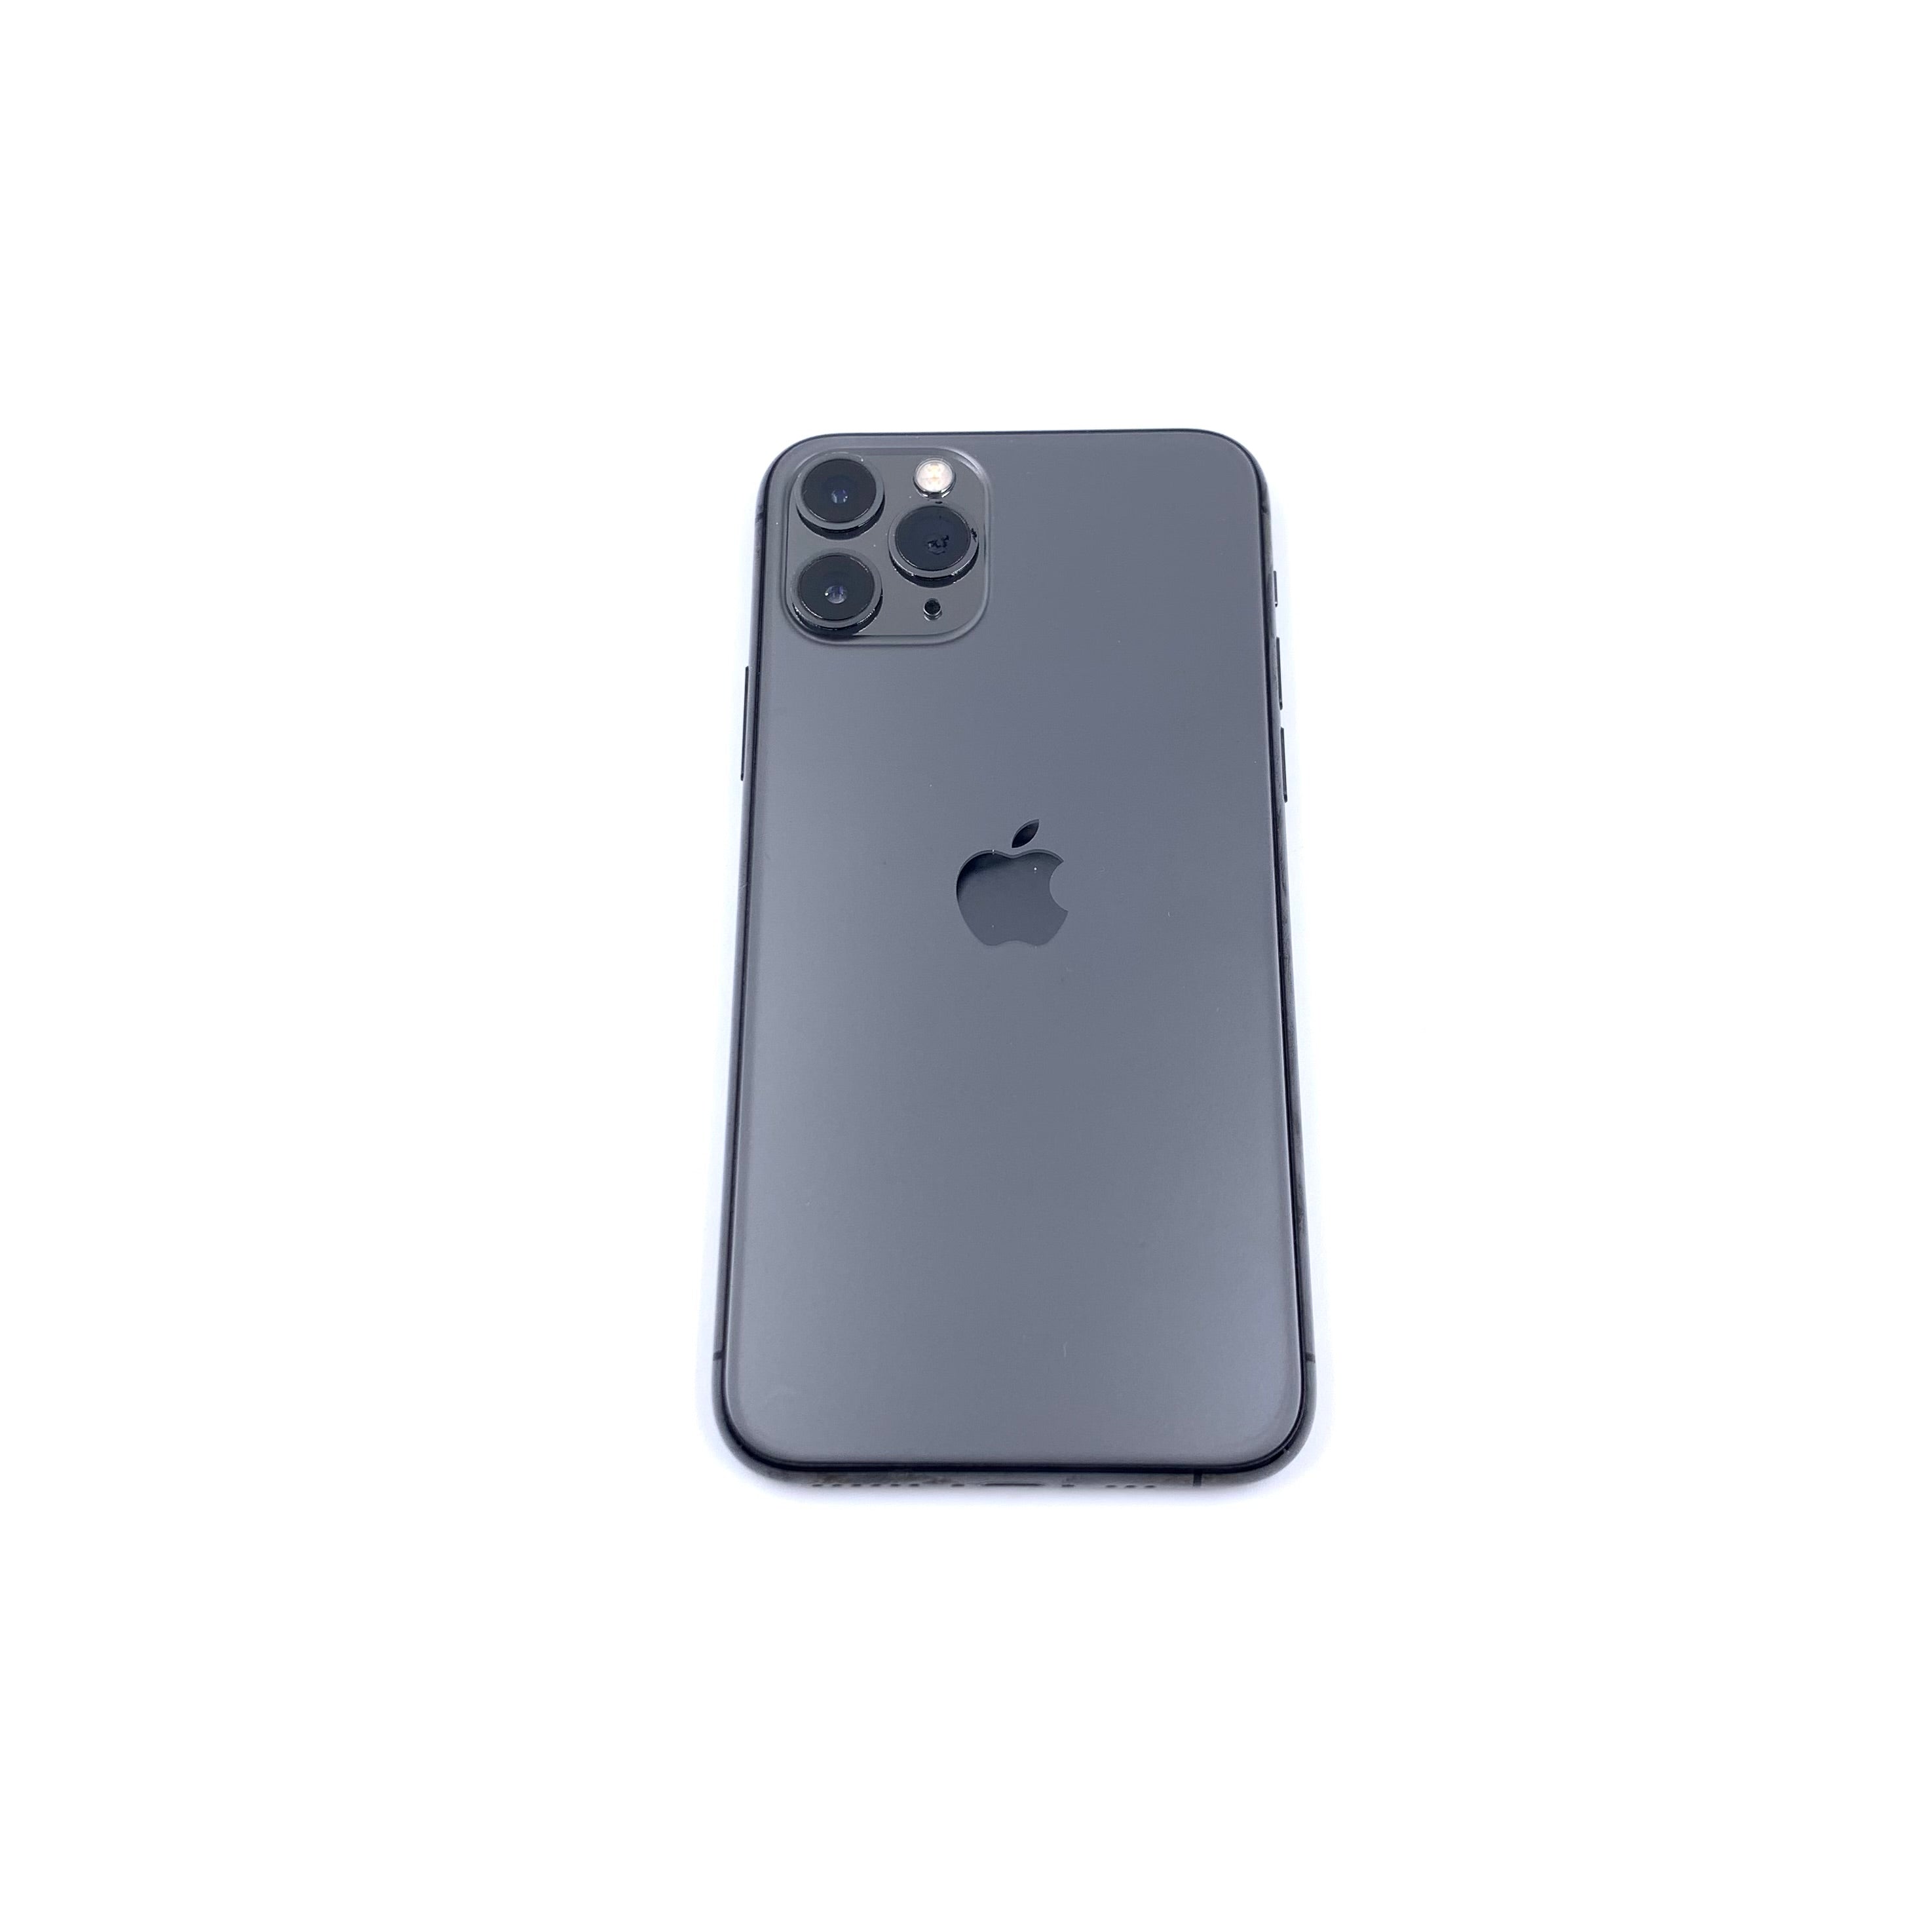 Apple iPhone 11 Pro A2215 (Reacondicionado) – Tienda Dondé